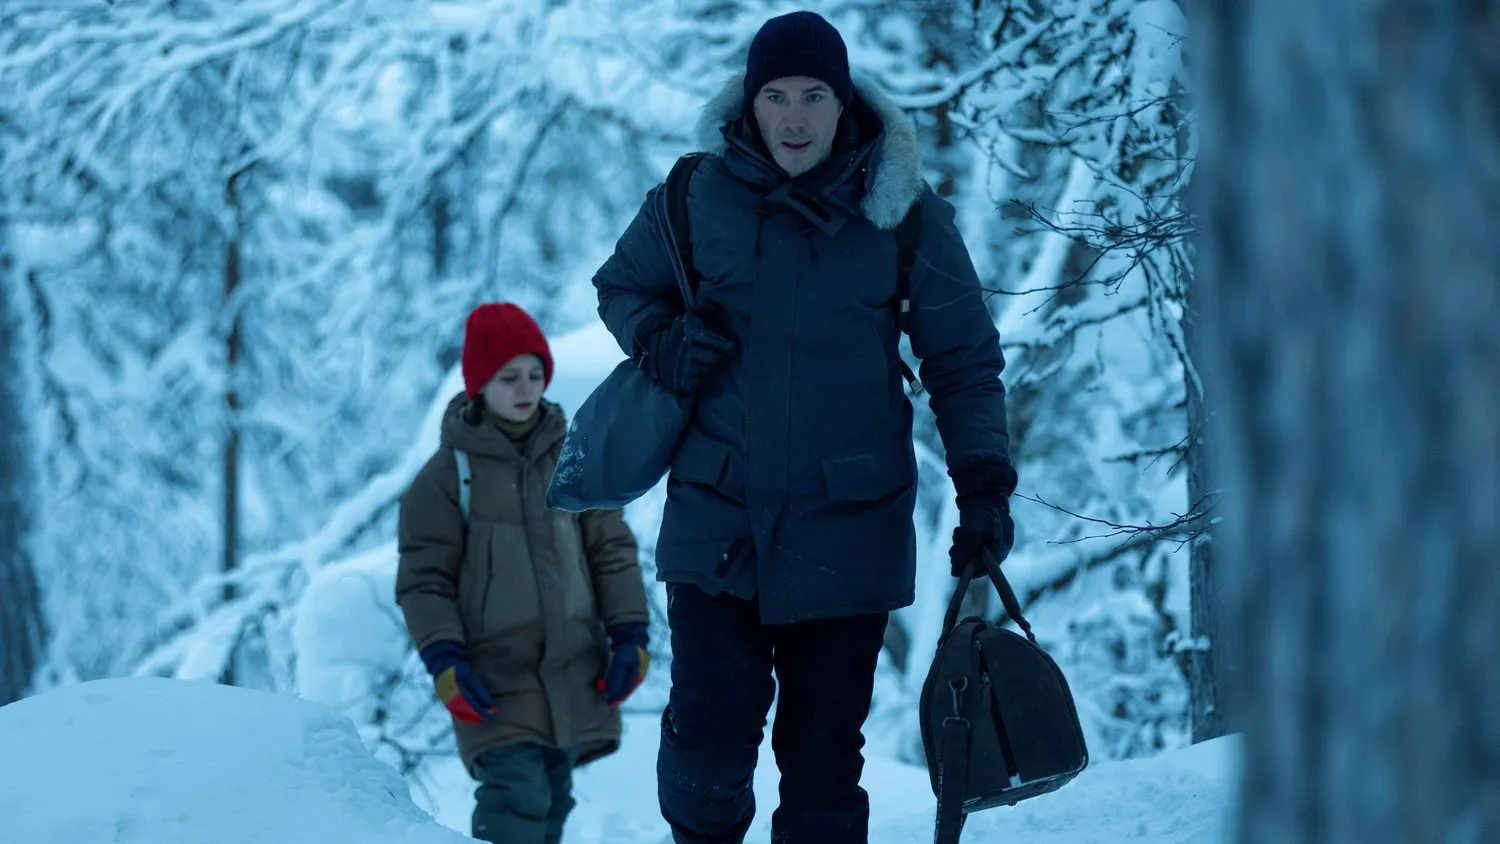 Ein junges Mädchen und ihr Vater tragen dicke Winterkleidung, als sie durch einen verschneiten Wald gehen.